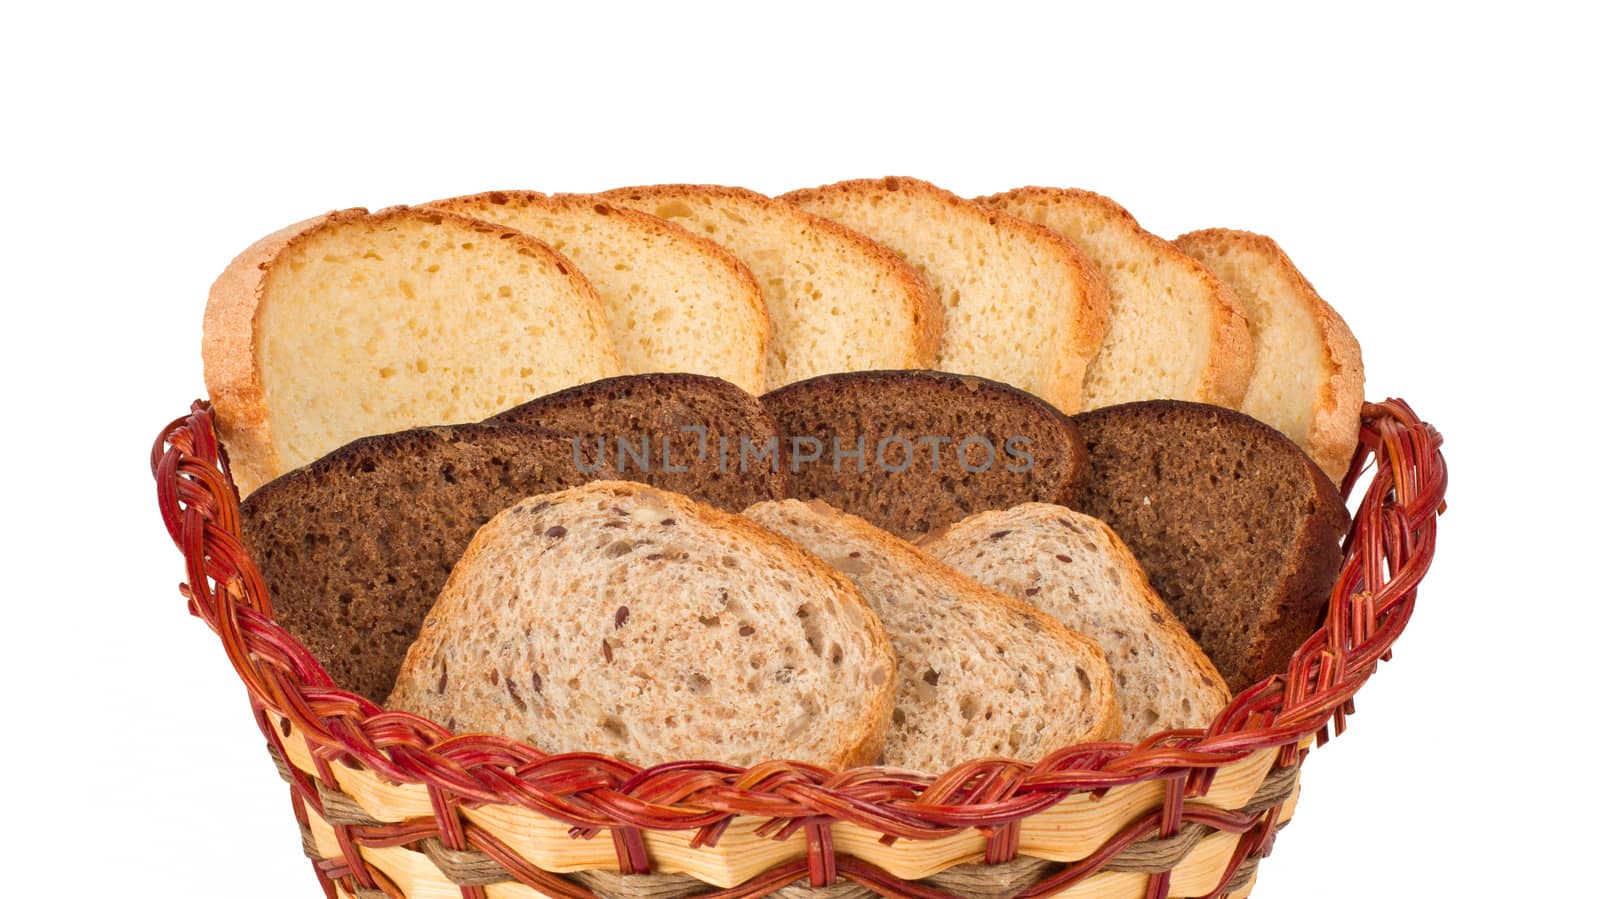 bread in basket by ozaiachin